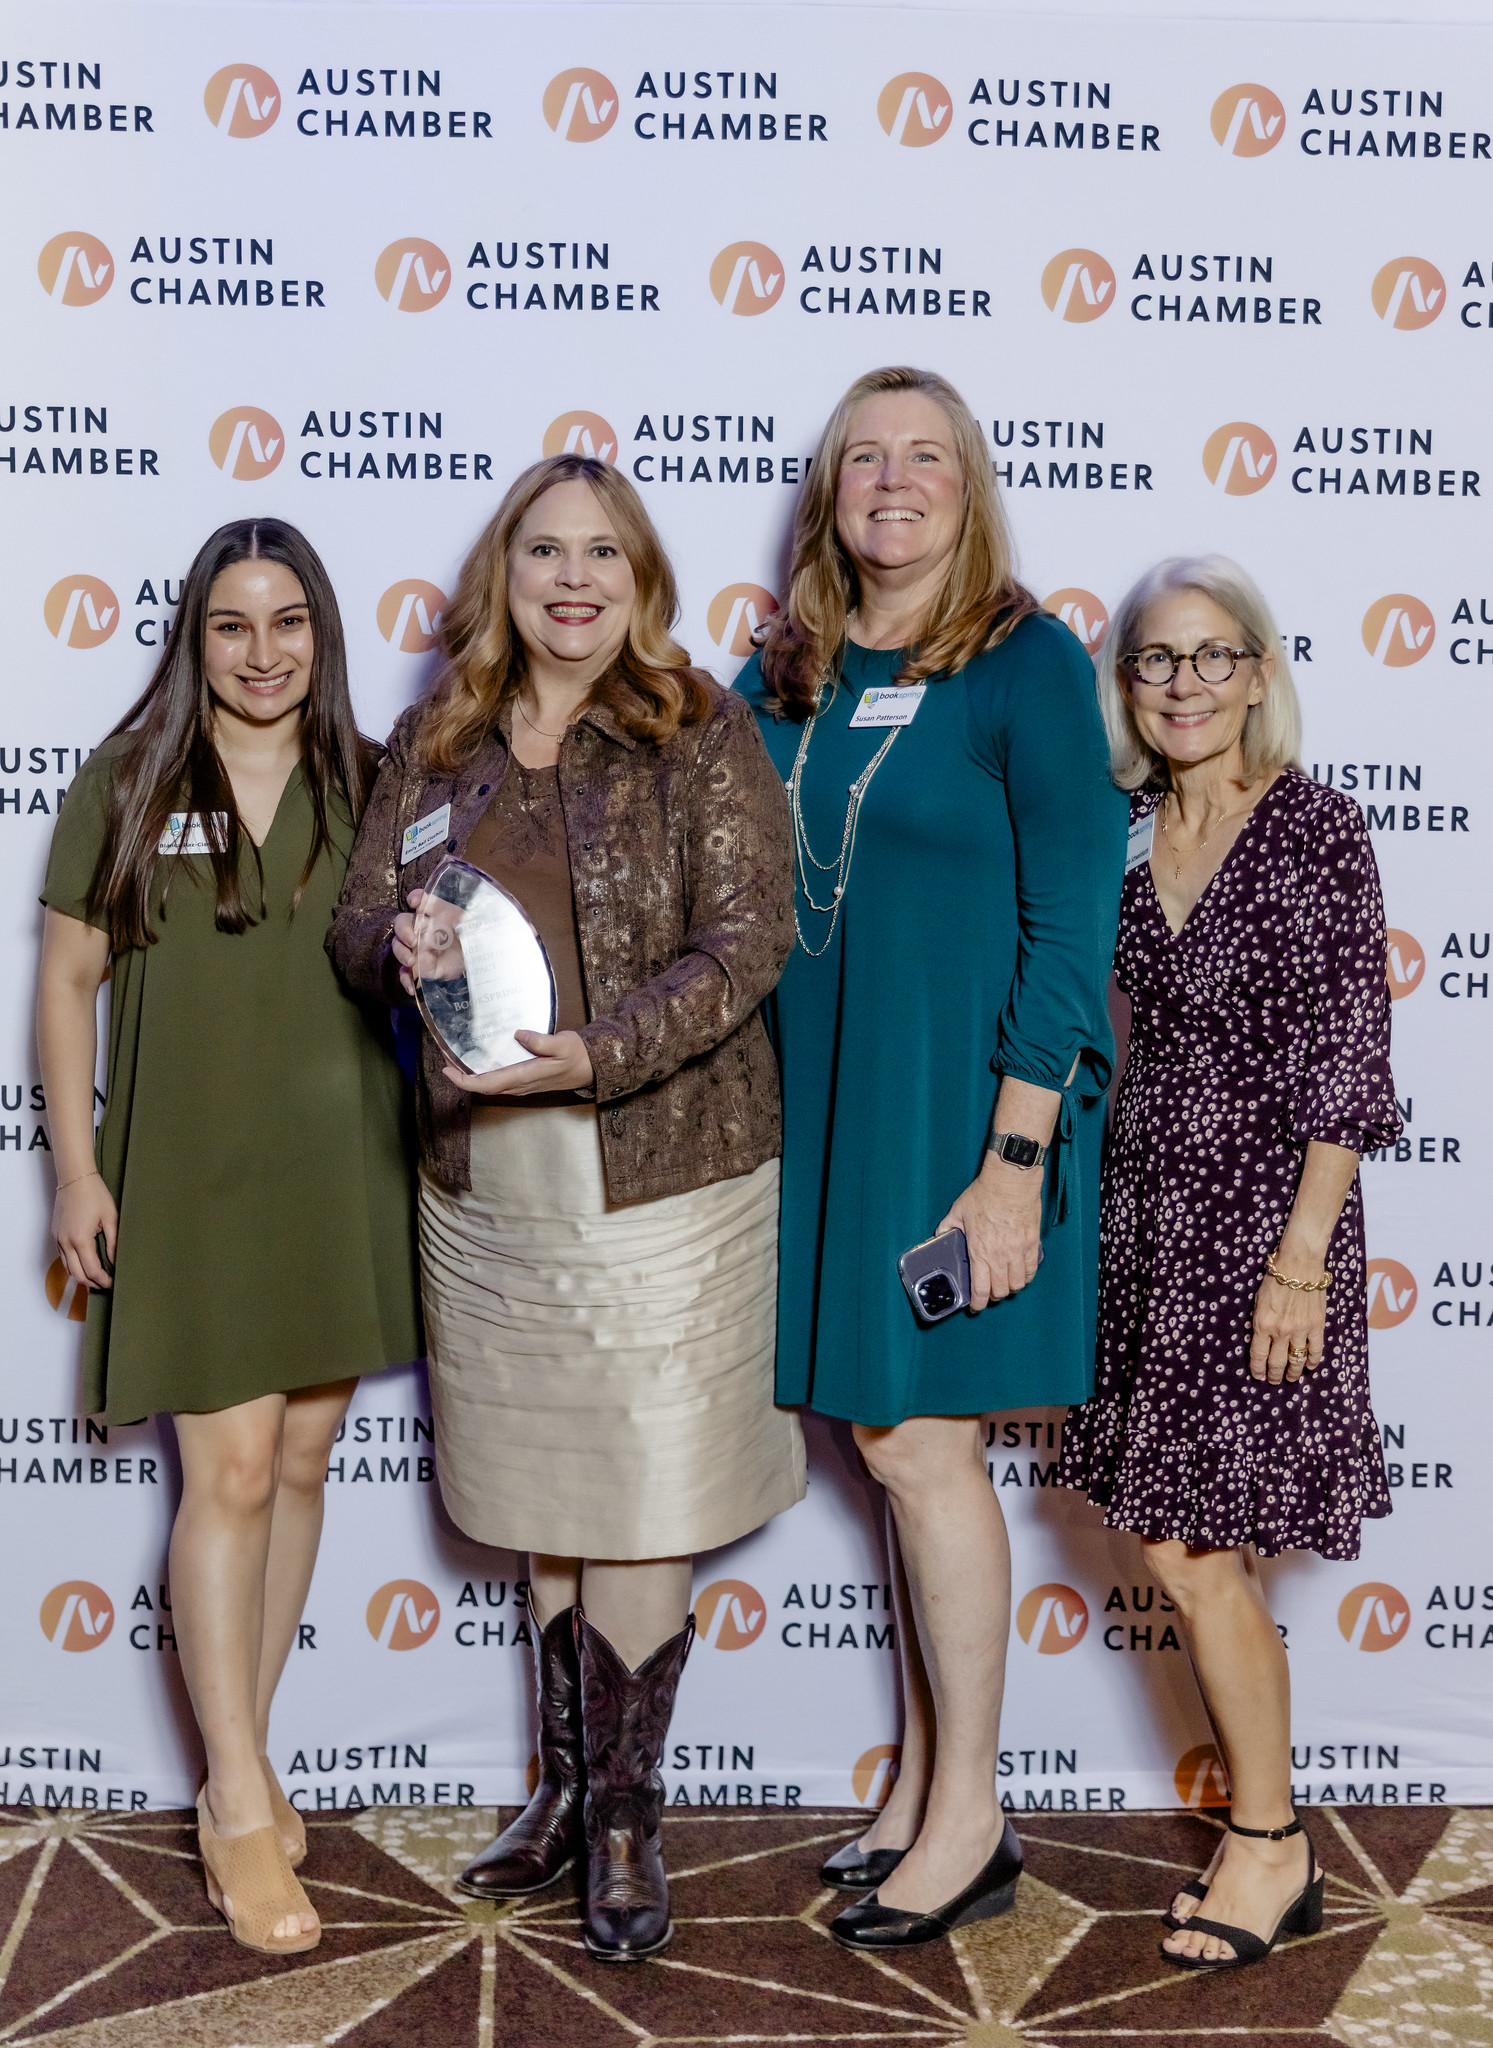 BookSpring Wins Nonprofit Impact Award at Greater Austin Business Awards